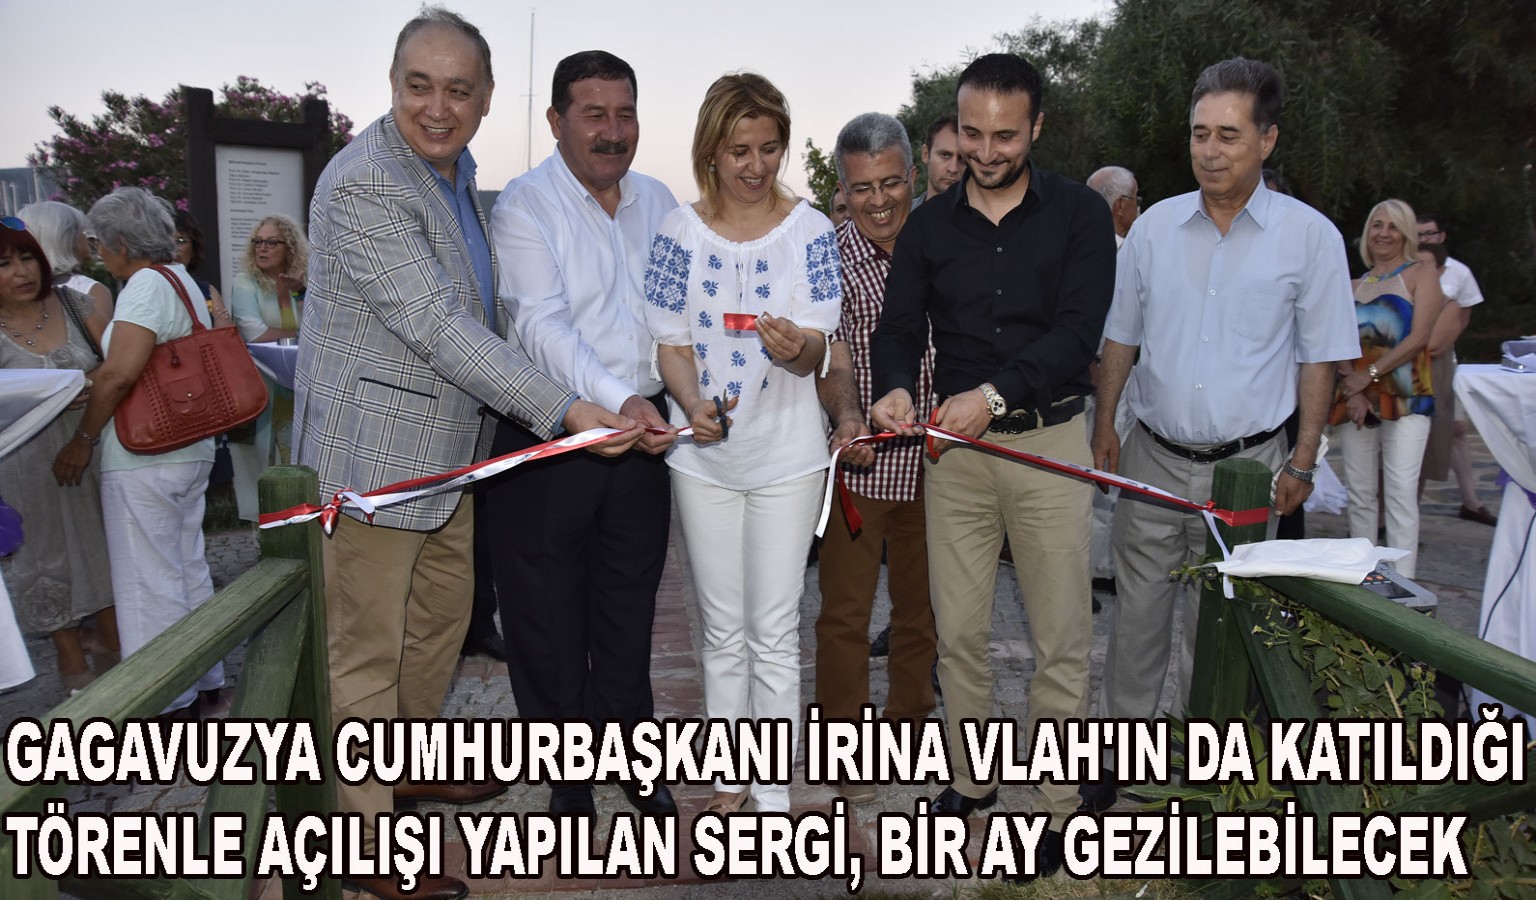 PİRİ REİS'İN HARİTALARI BODRUM'DA!..